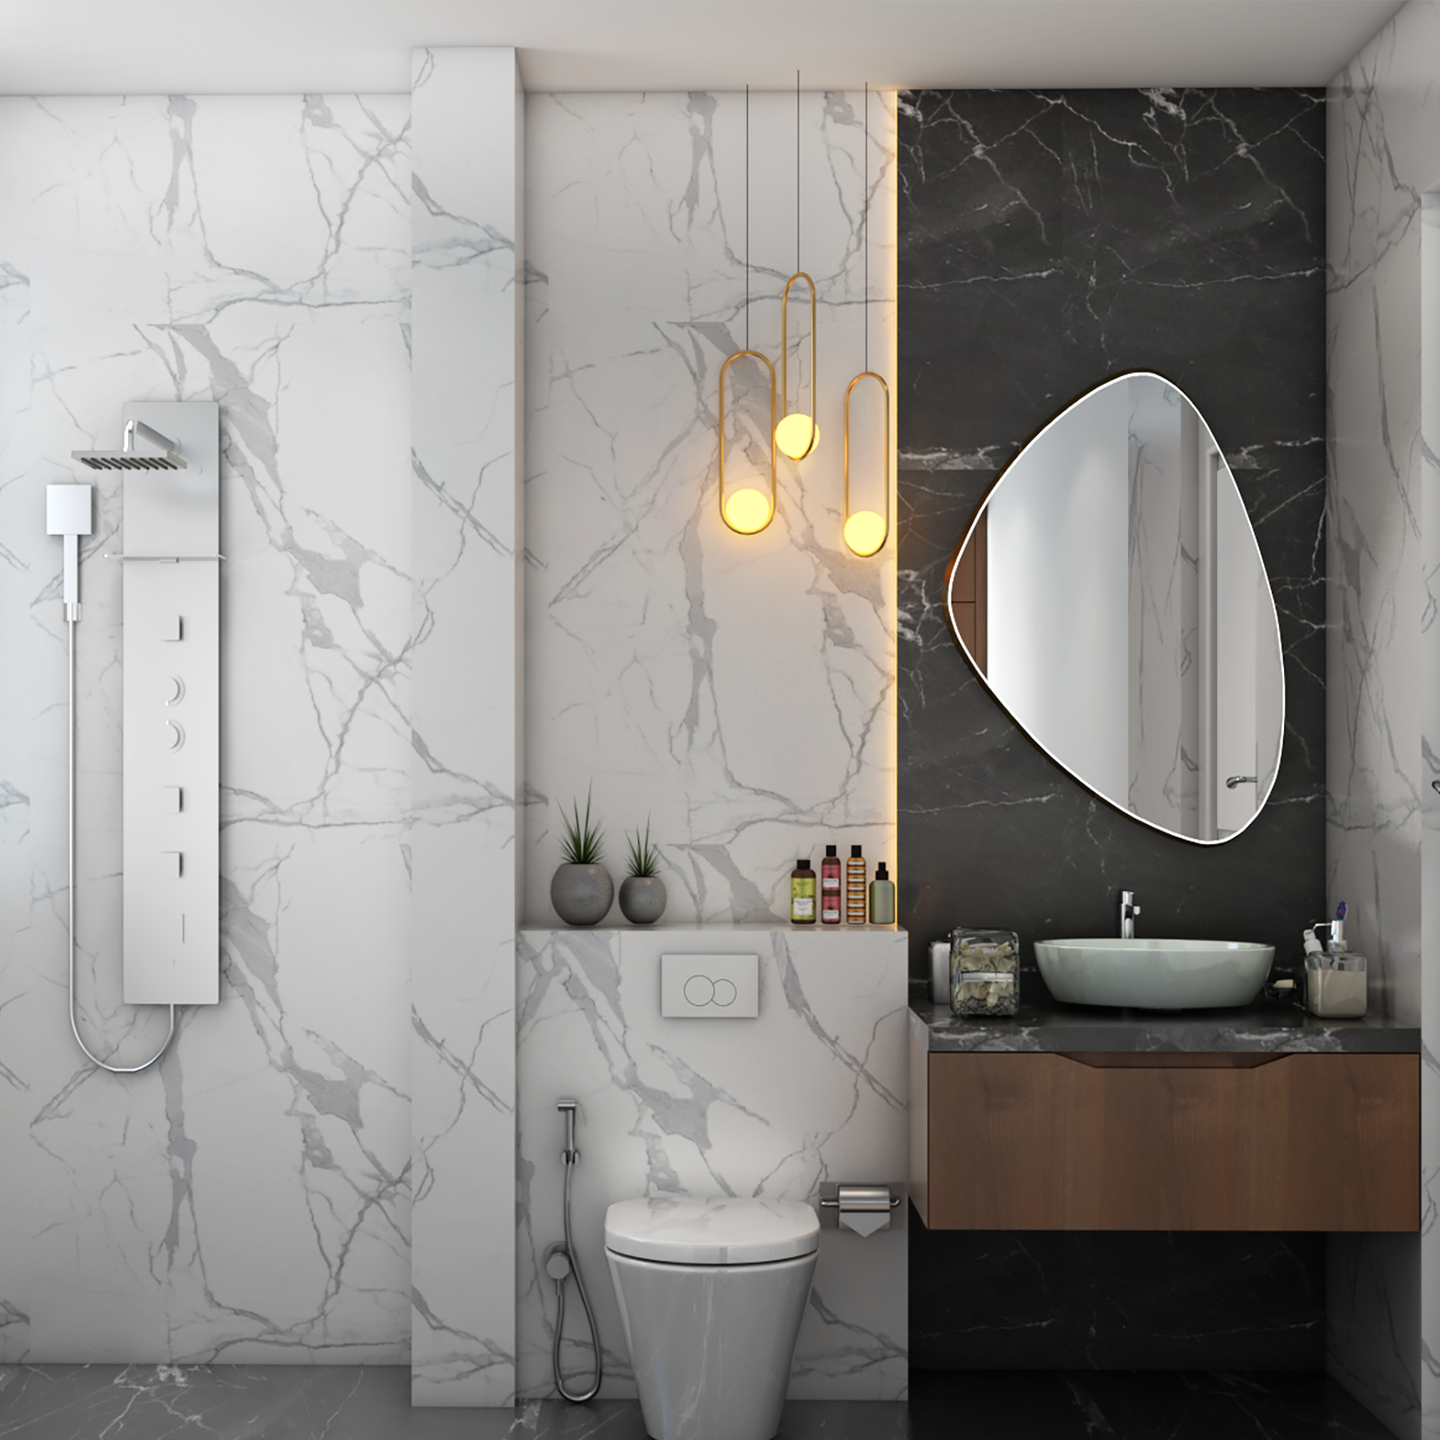 Spacious Contrasting Bathroom Design Ideas - Livspace